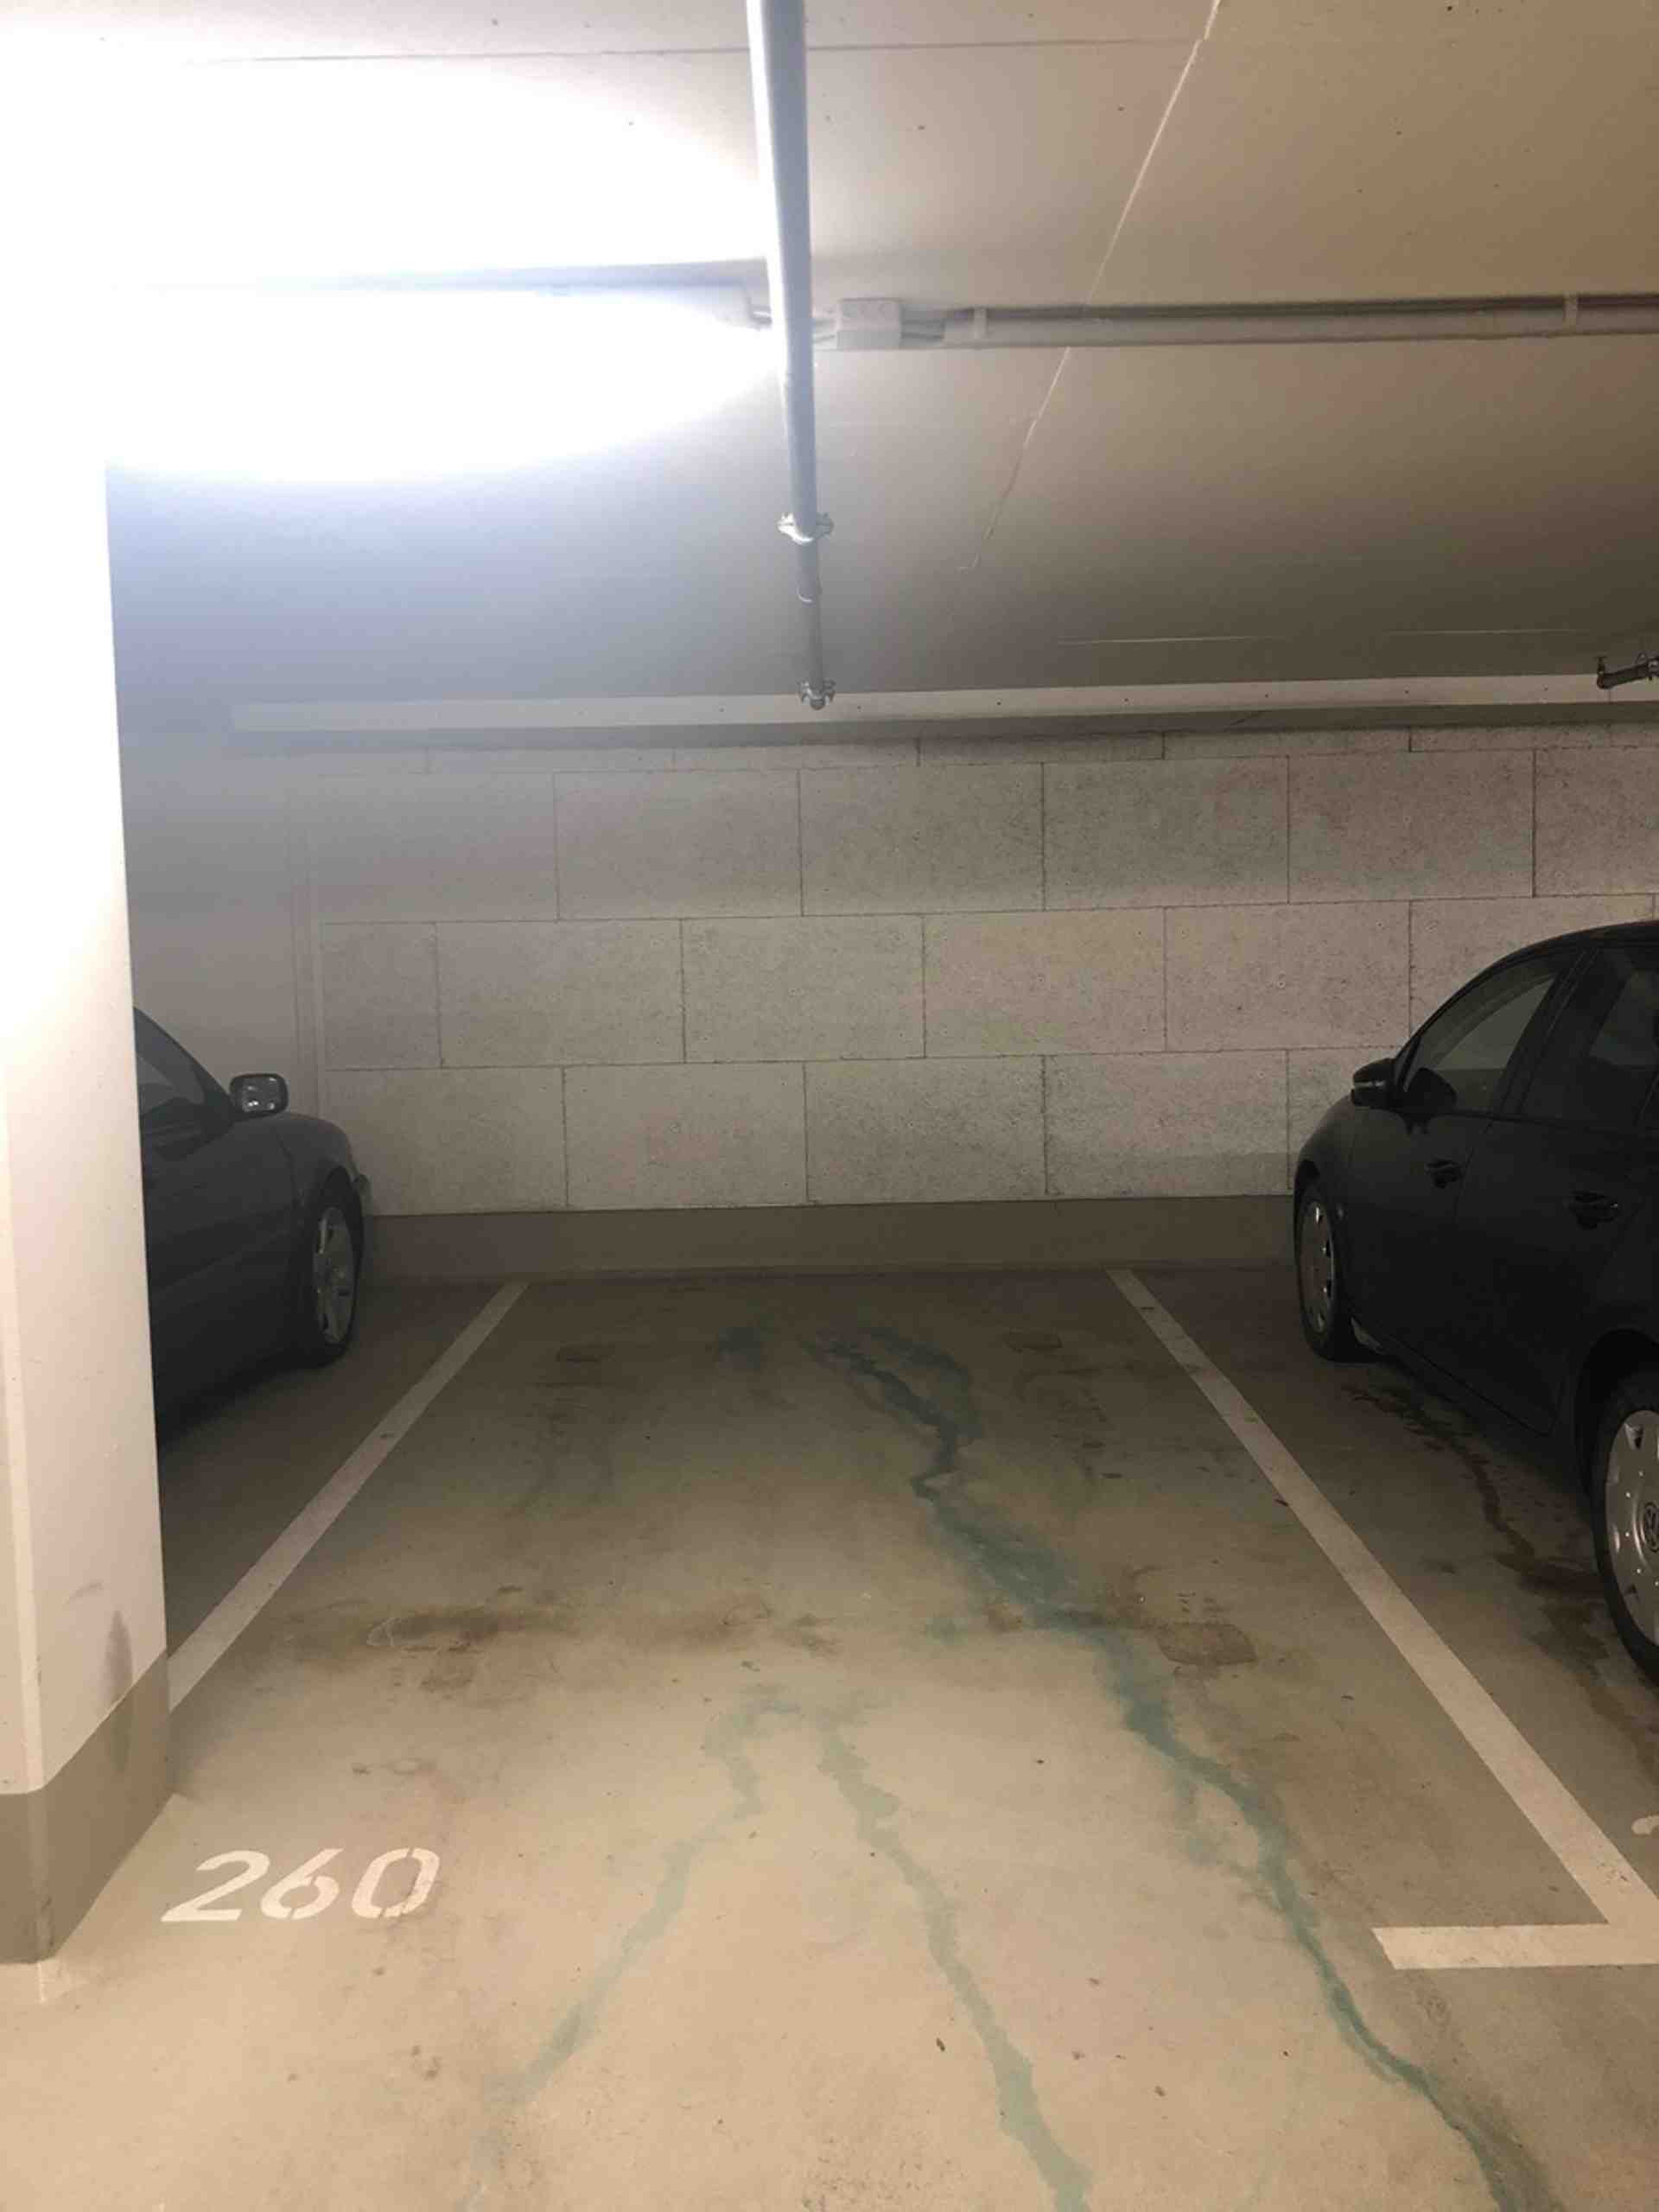 Exclusive undergr. parking spot near Munich central station. - Philipp-Loewenfeld-Straße, 80339 München - Foto 2 von 3